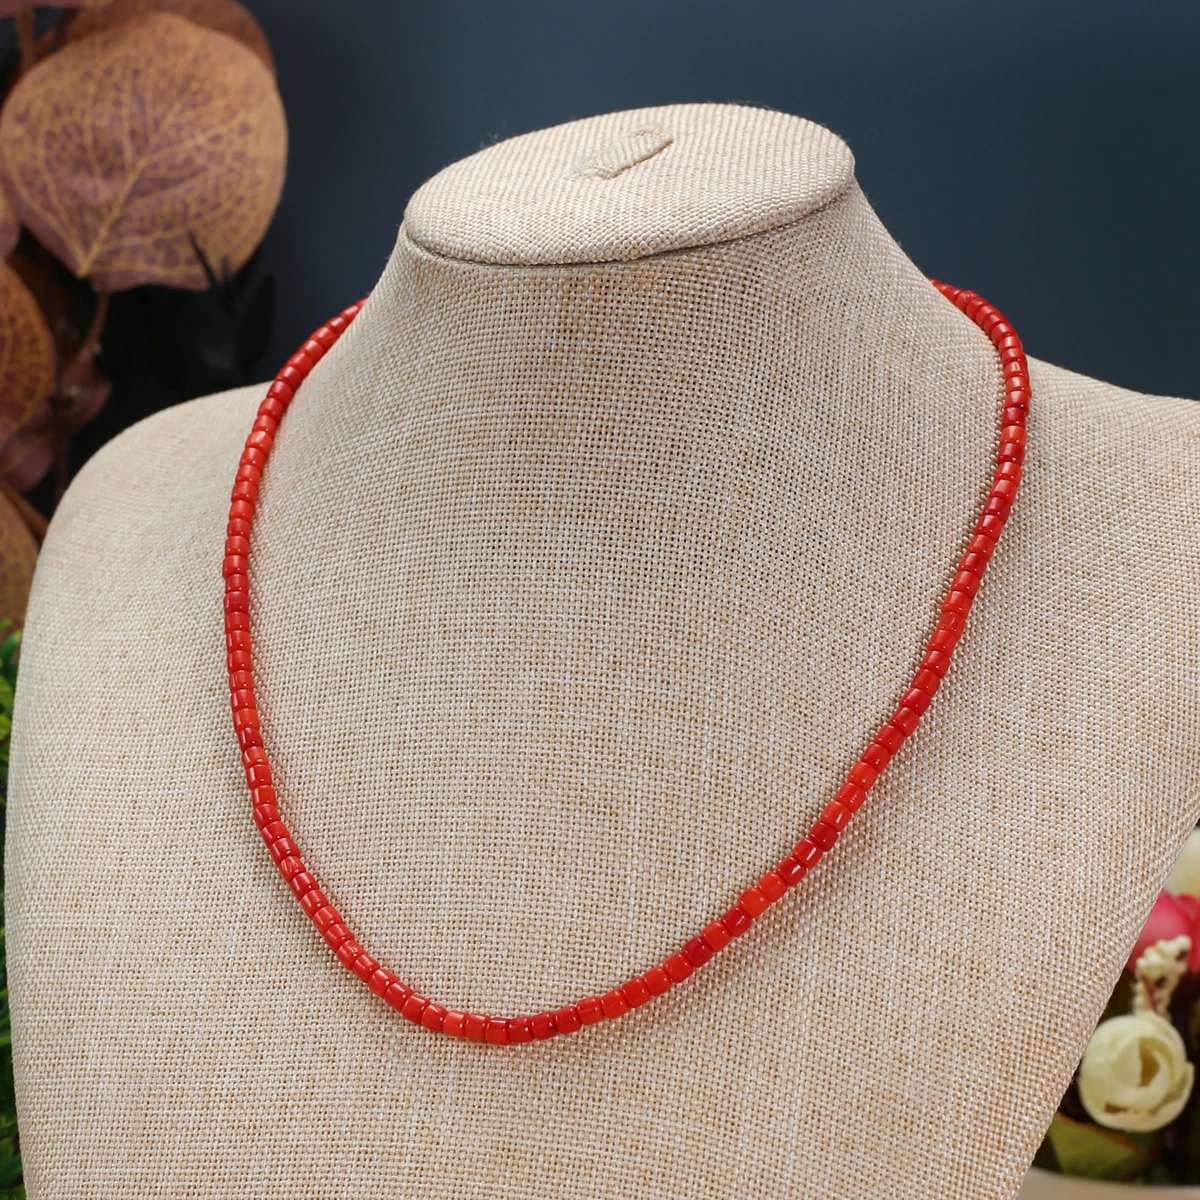 3 мм Натуральные коралловые бусины, расшитые бисером красные Распорные бусины для изготовления ювелирных изделий, аксессуары для браслетов и ожерелий 